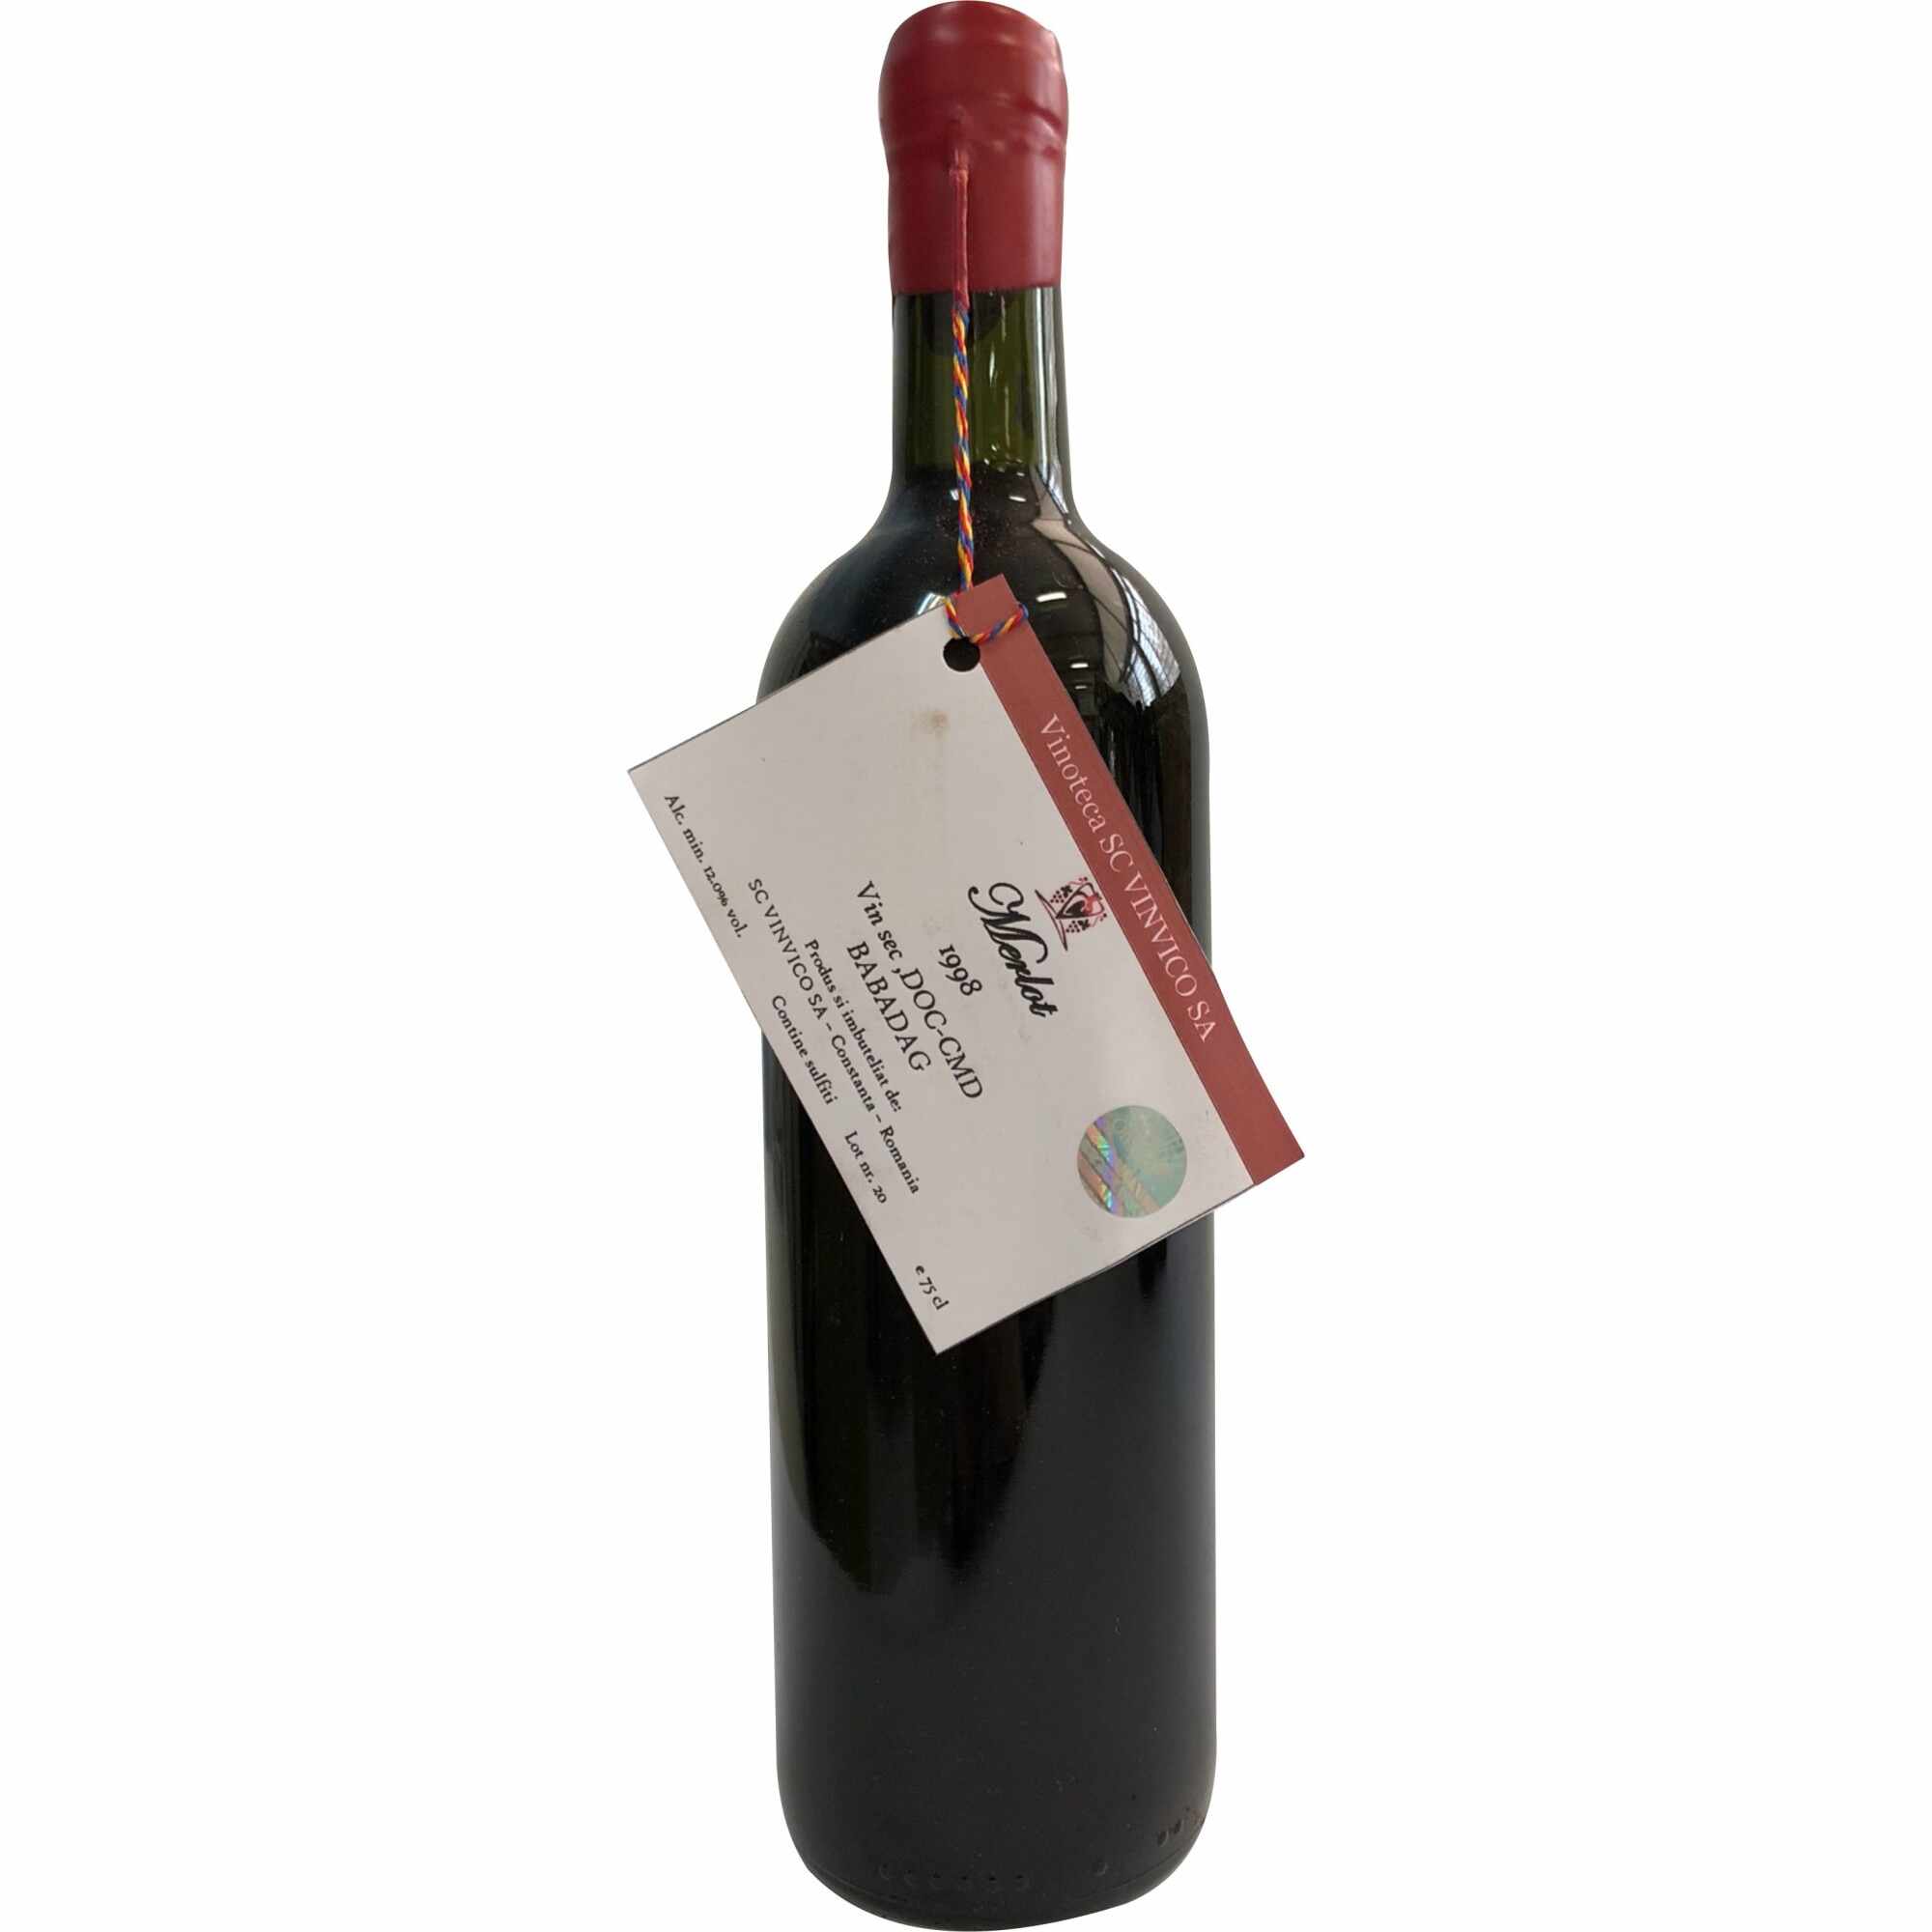 Vin de Vinoteca - Merlot Babadag DOCCMD 1998, 0.75L - in cutie de lemn